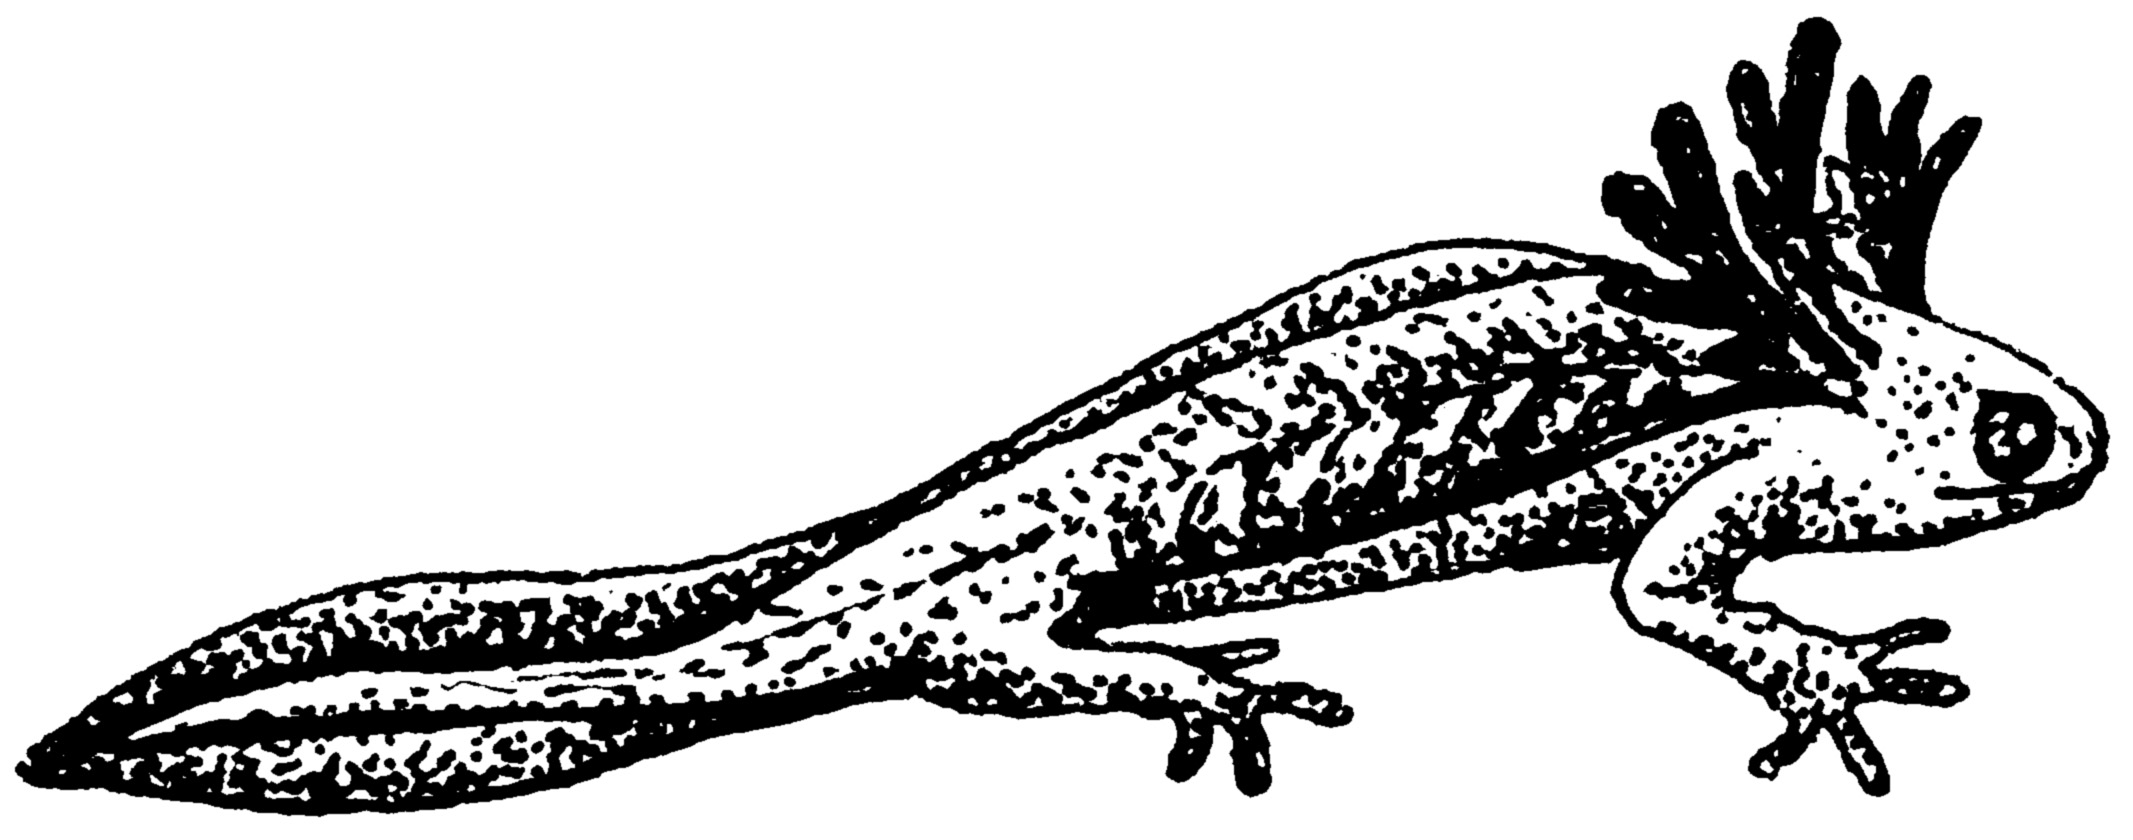 Salamander clipart #7, Download drawings